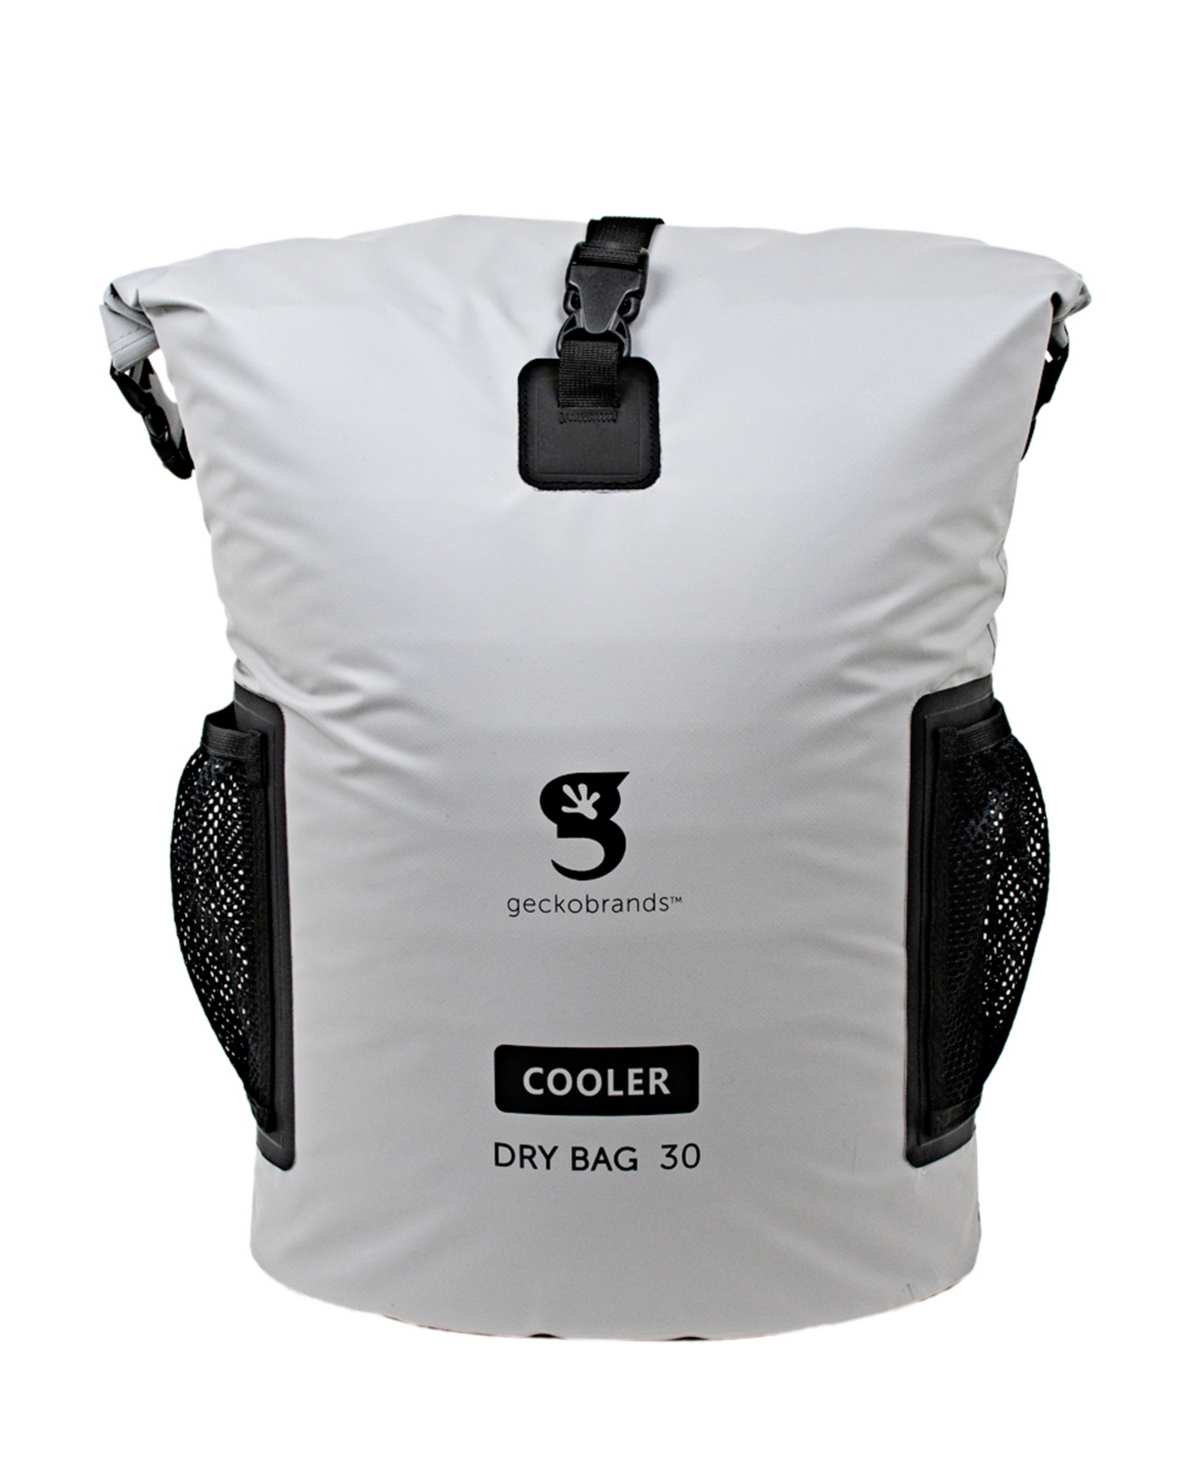 Geckobrands Backpack Dry Bag Cooler In Gray